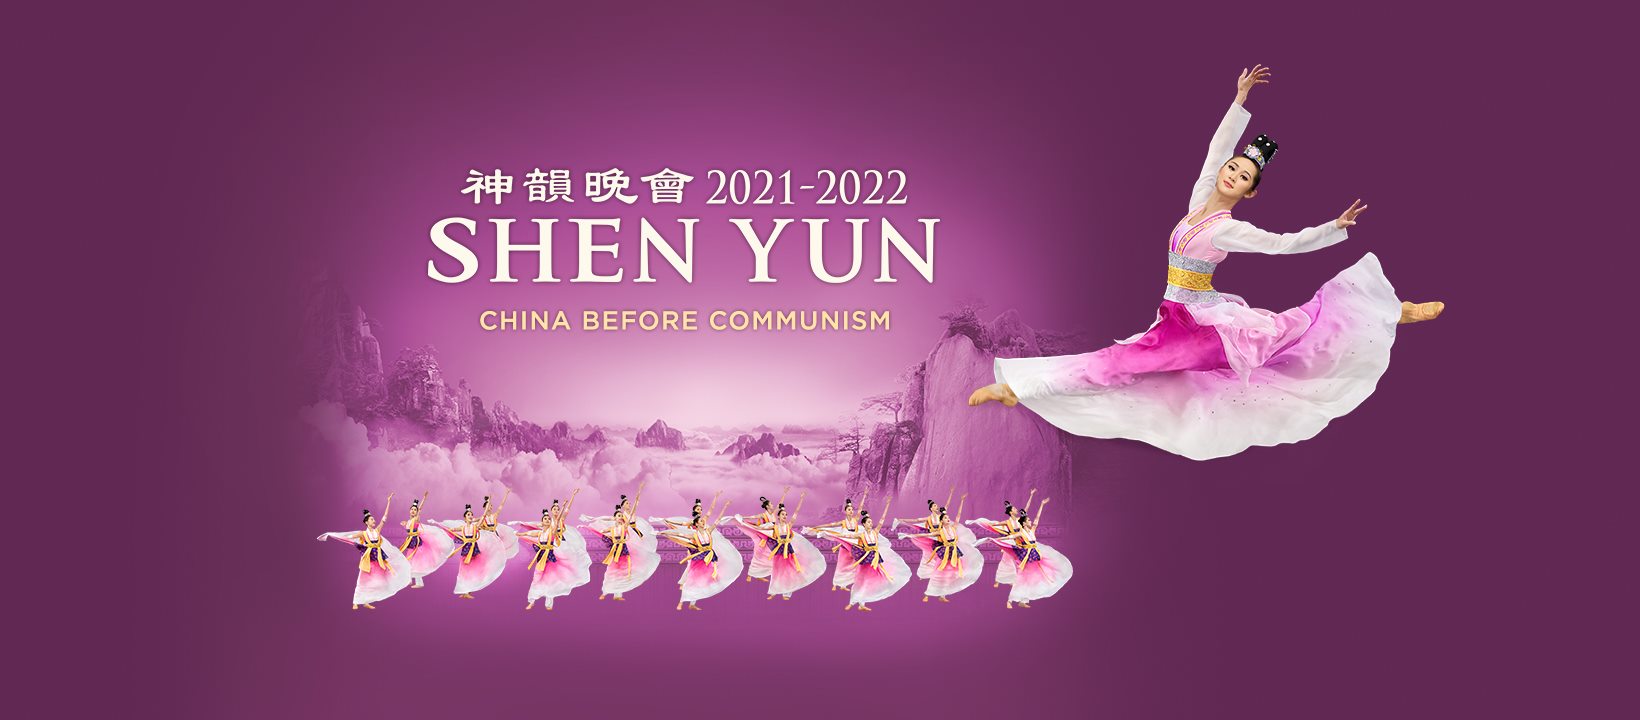 Dechberoucí představení složené z tance a hudby souboru Shen Yun, které představí v roce 2022 na svém vystoupení hned ve dvou termínech v Janáčkově divadle v Brně. Vstupenky na představení Shen Yun naleznete na Colosseumticket.